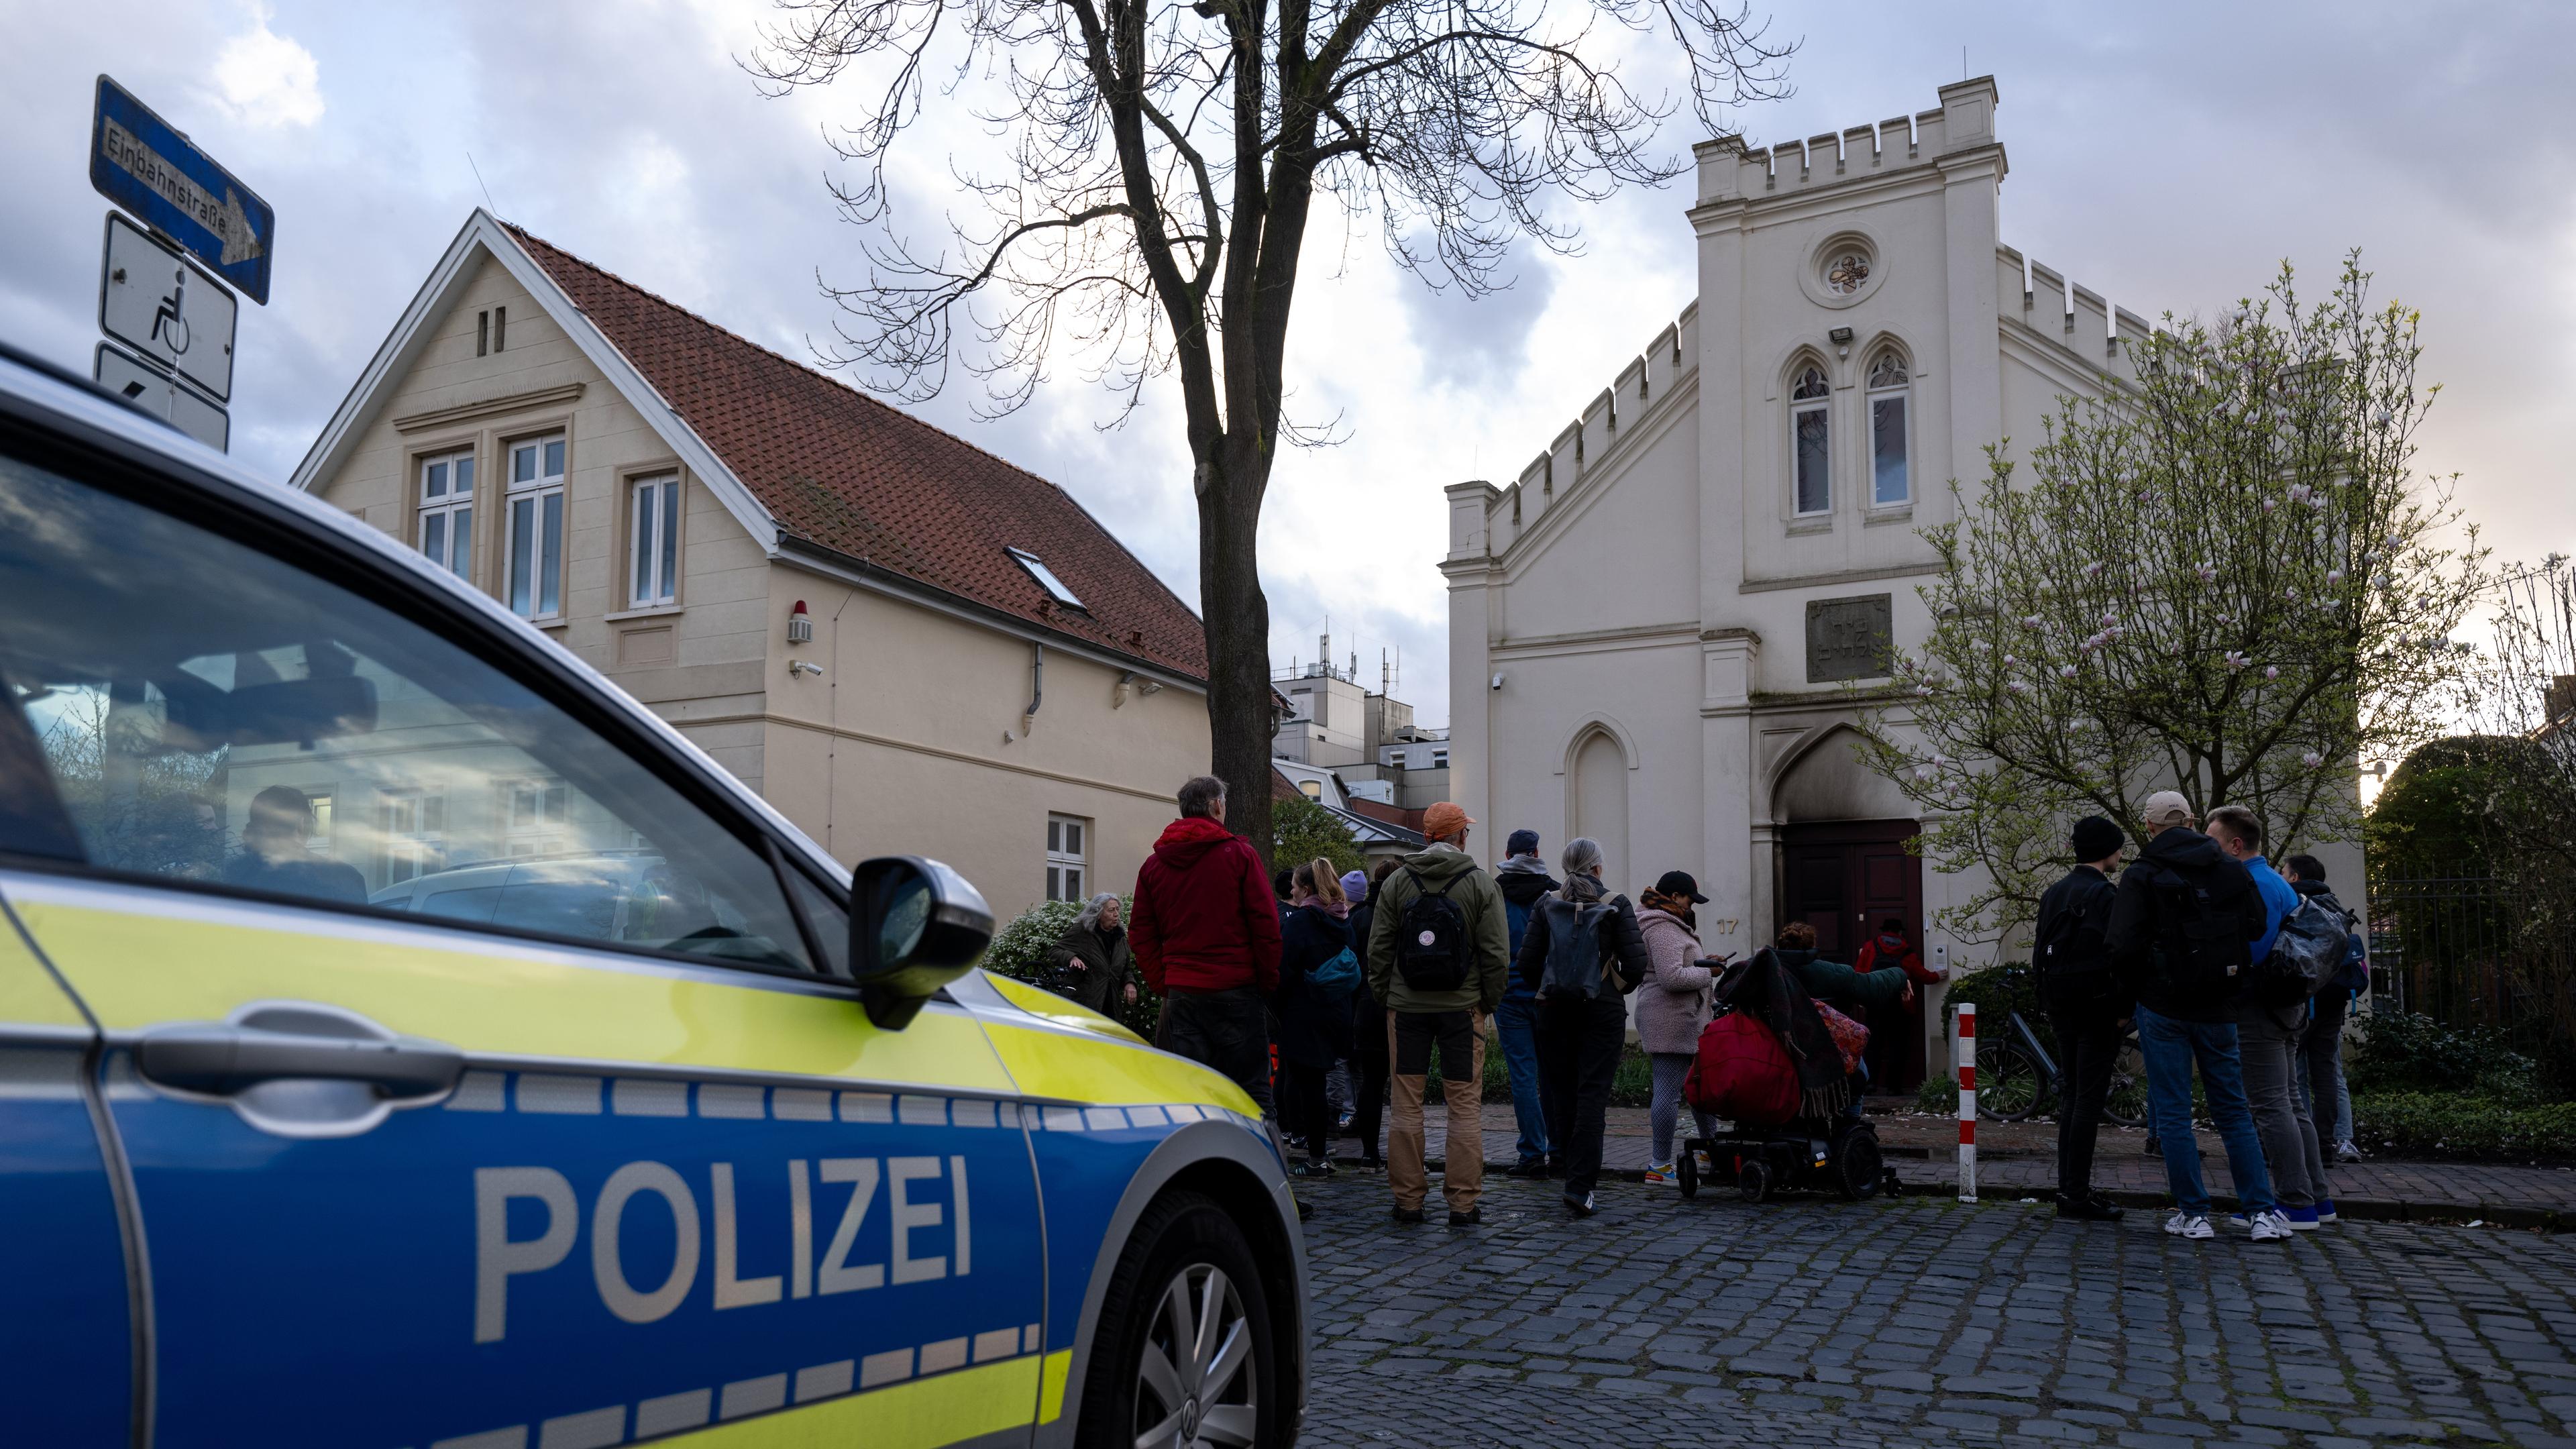 På bild ses en polisbil och människor vid synagogan i Oldenburg i norra Tyskland den 5 april. Foto: David Hecker/Getty Images